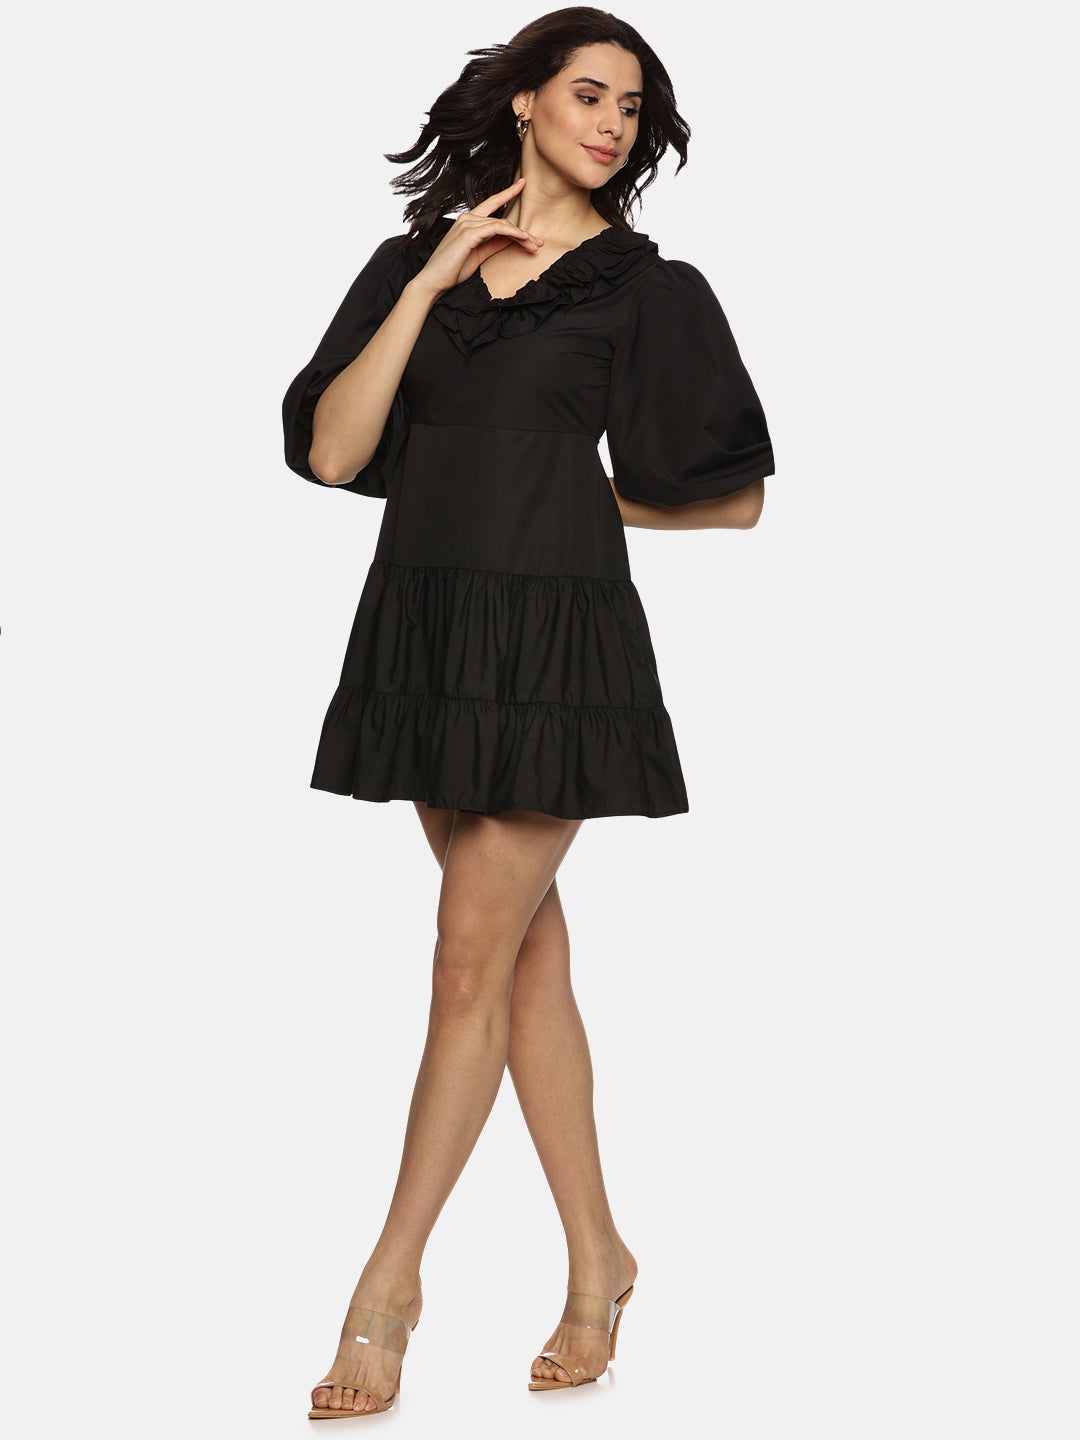 IS.U Solid Black Puff Sleeve Mini Dress